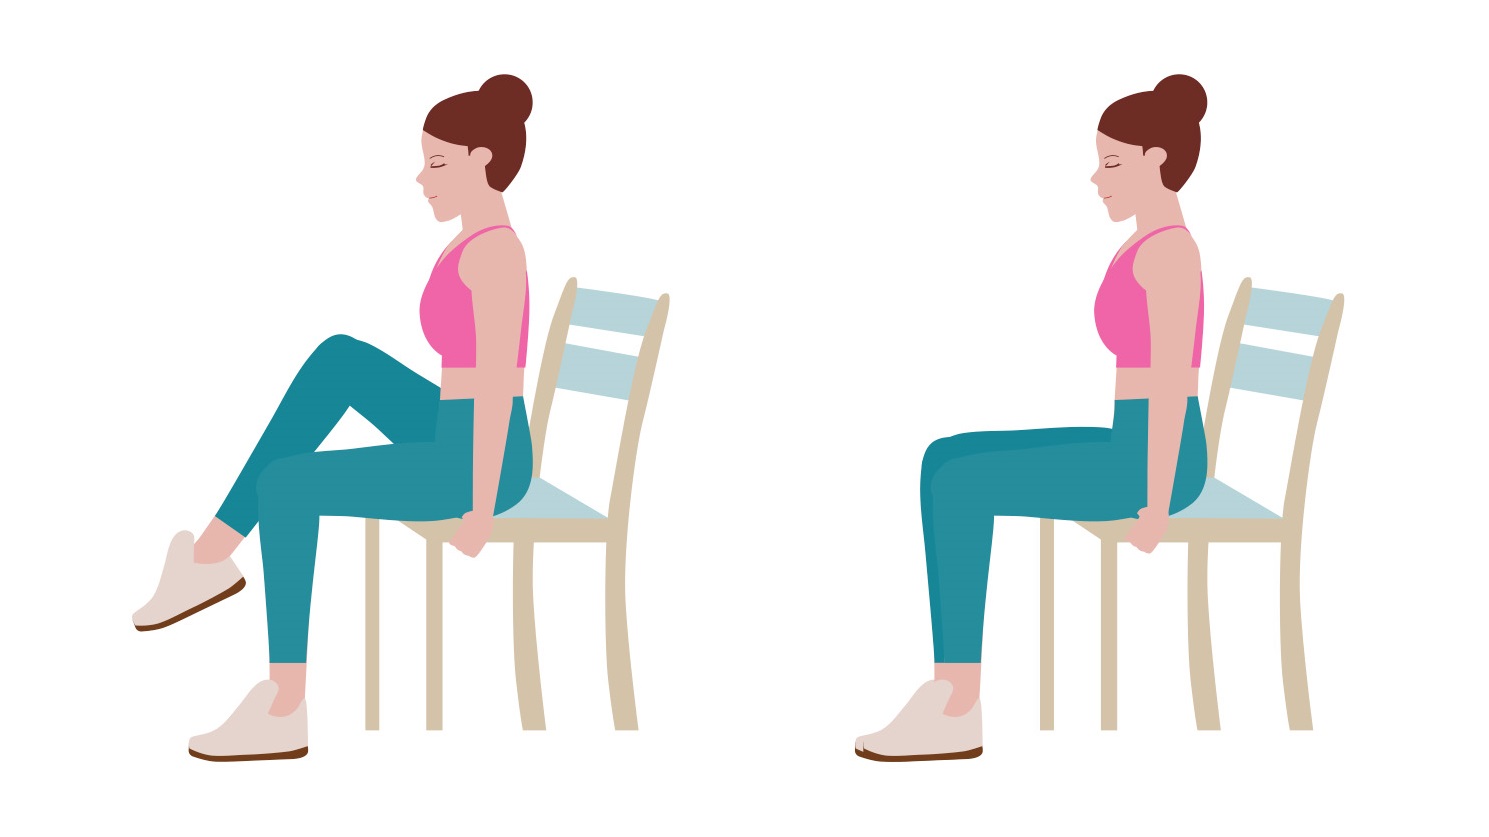 5 bài tập giảm cân cho nàng văn phòng hay ngồi nhiều, giúp eo thon nhỏ - Ảnh 3.